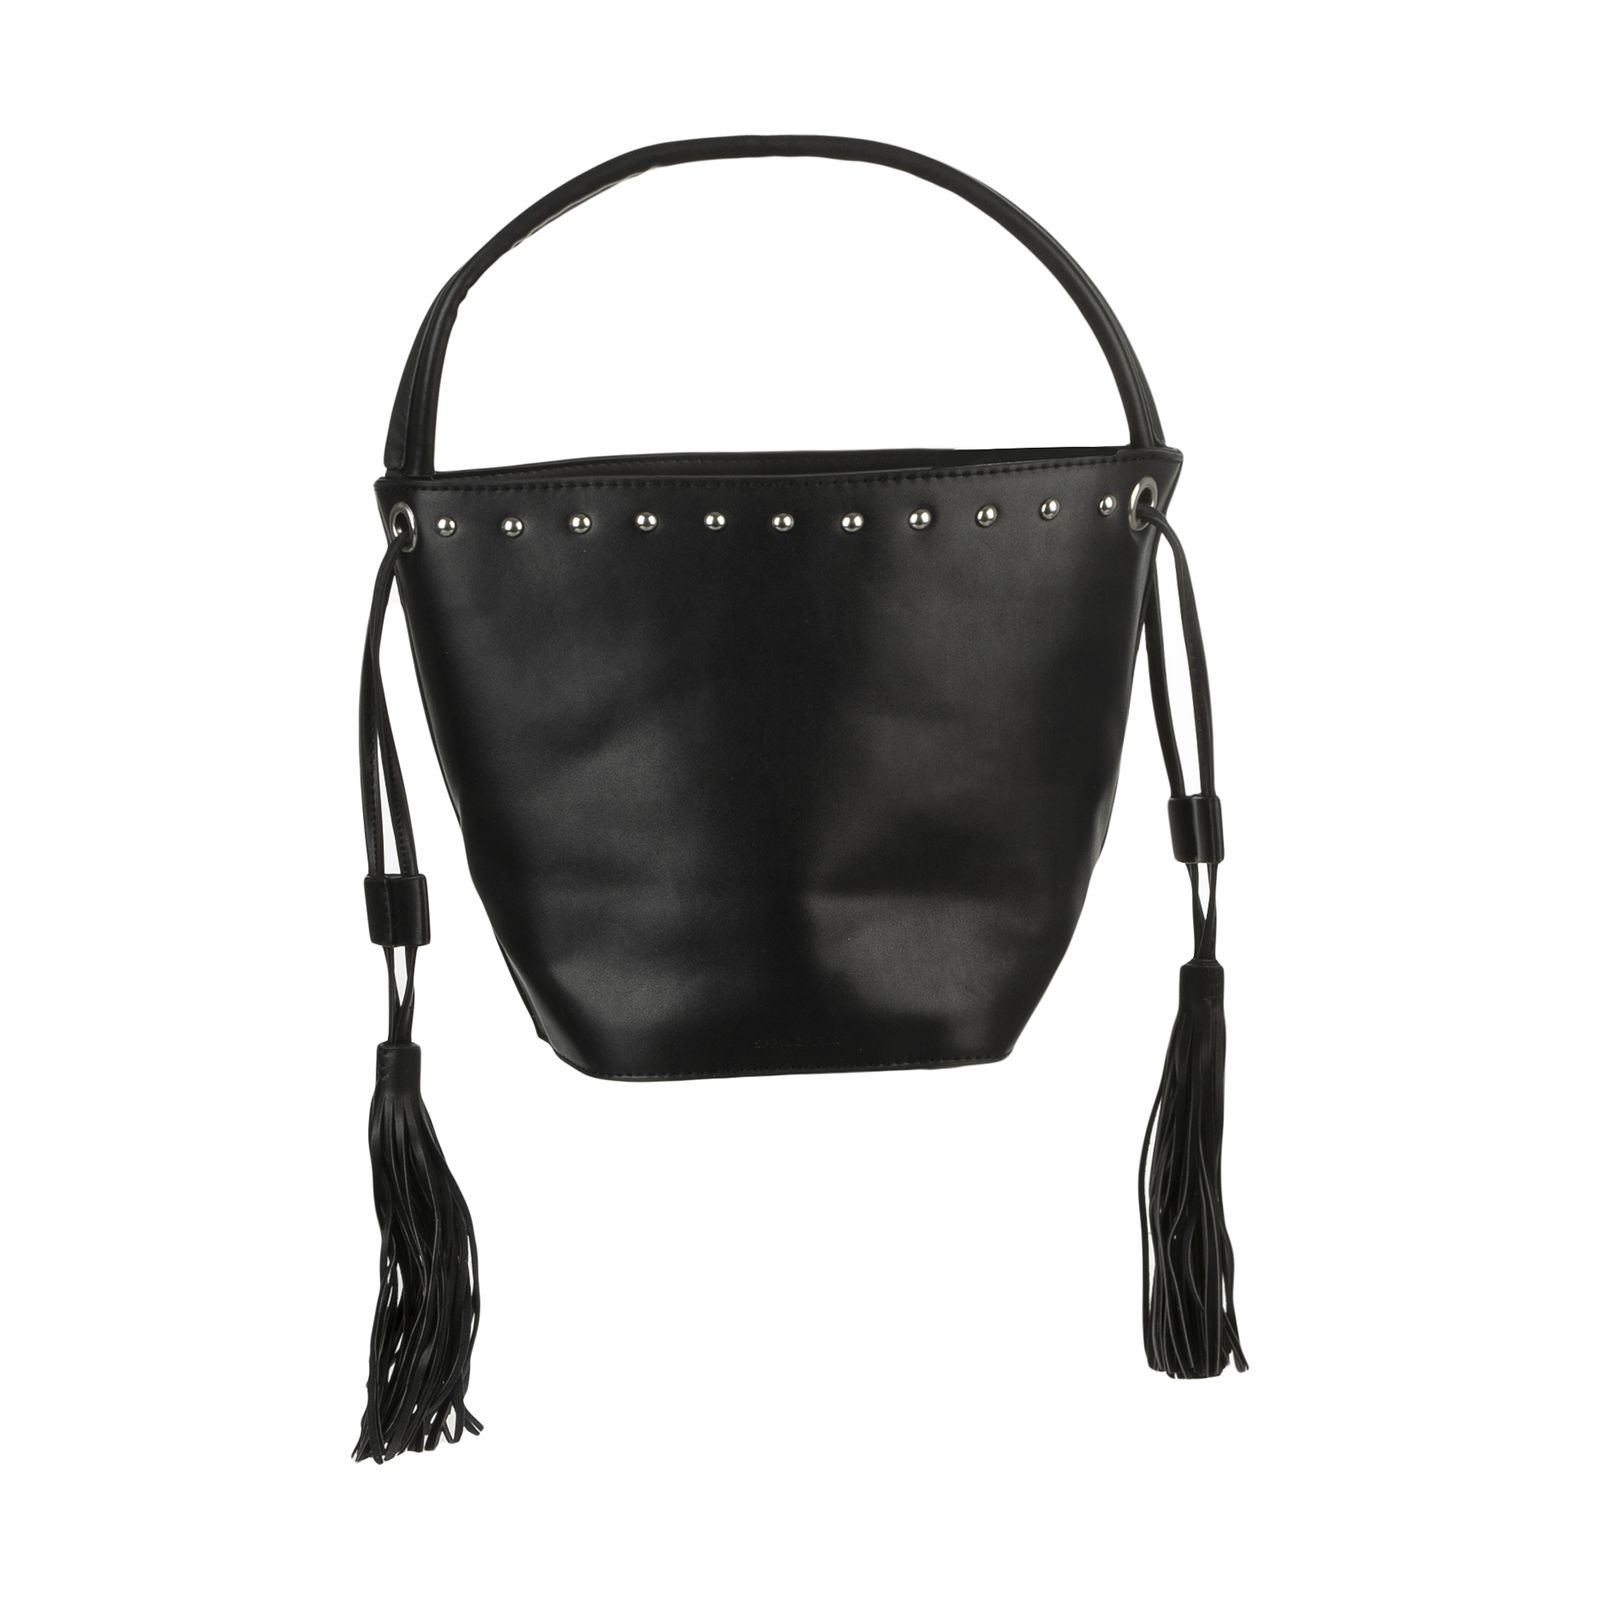 کیف دستی زنانه اسپرینگ فیلد مدل 8522103-BLACK - مشکی - 1